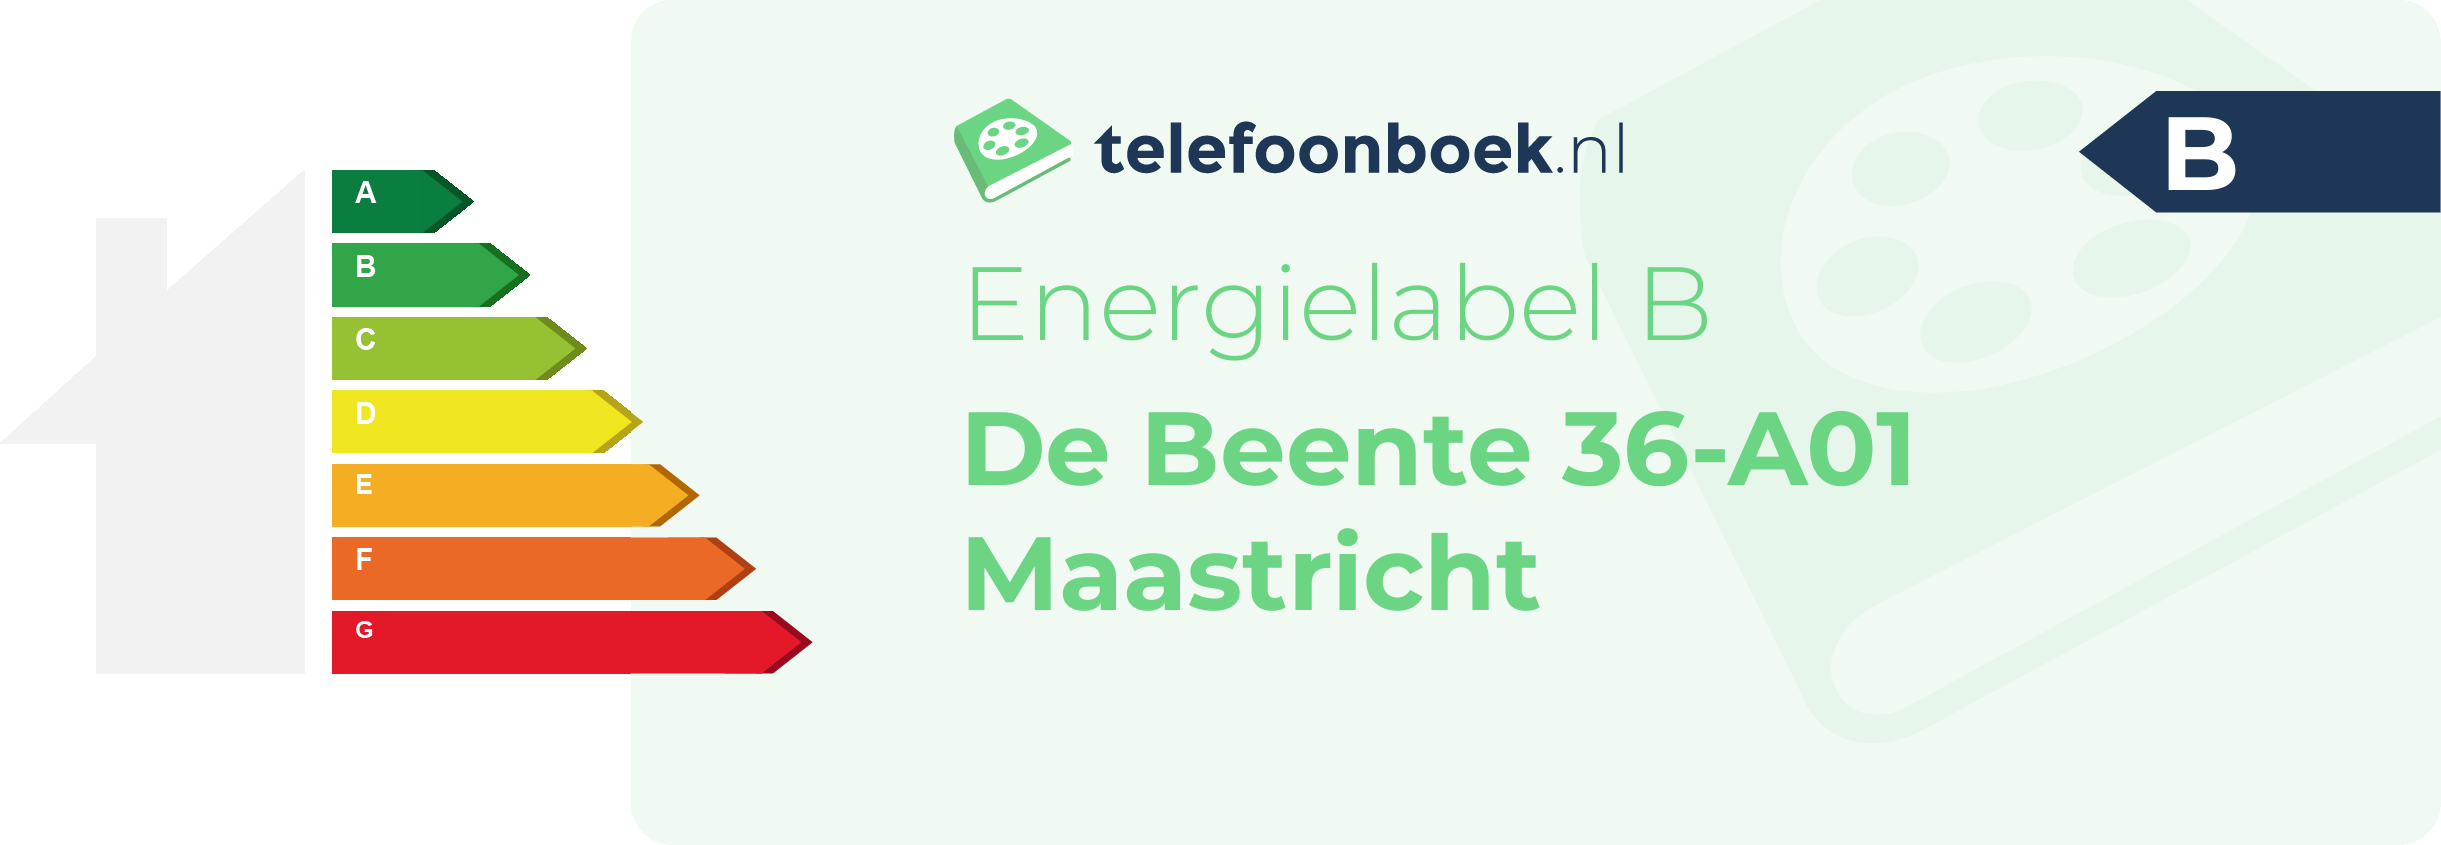 Energielabel De Beente 36-A01 Maastricht